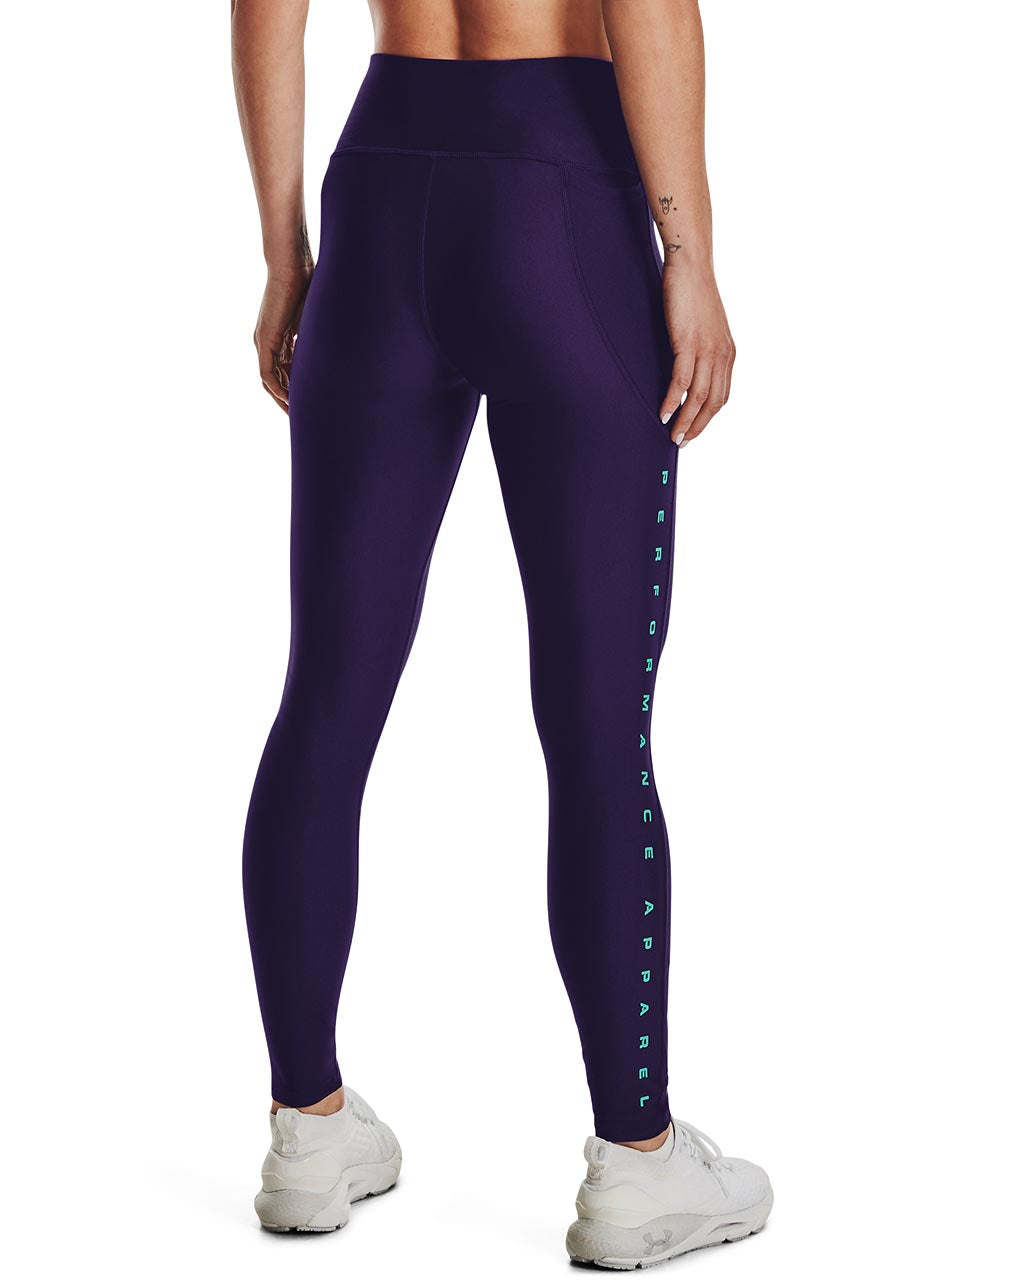 Buy Women's Nike Purple Leggings Online